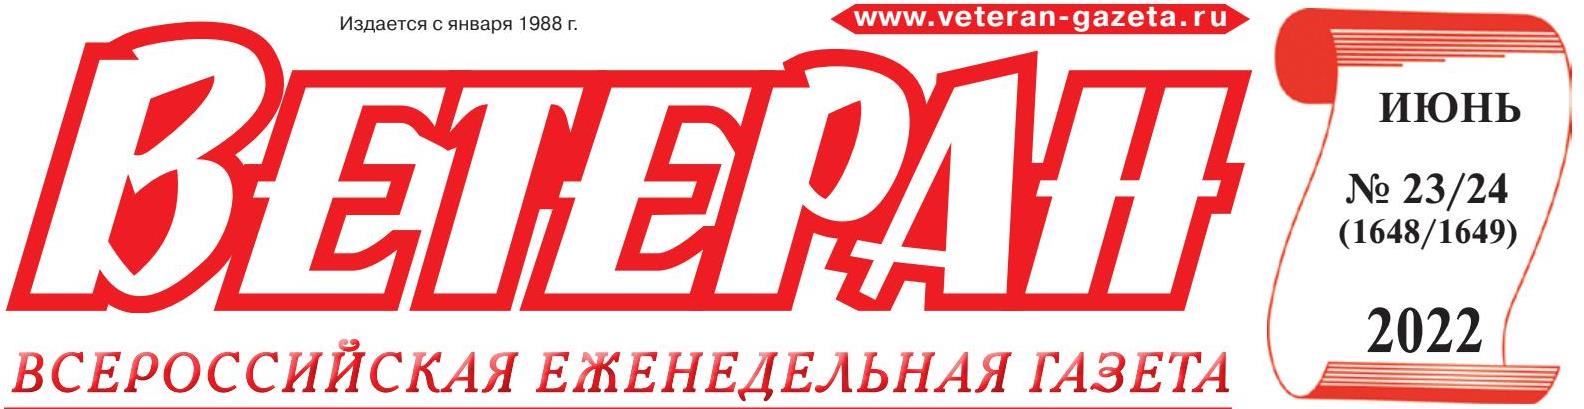 Газета «Ветеран» июнь 2022